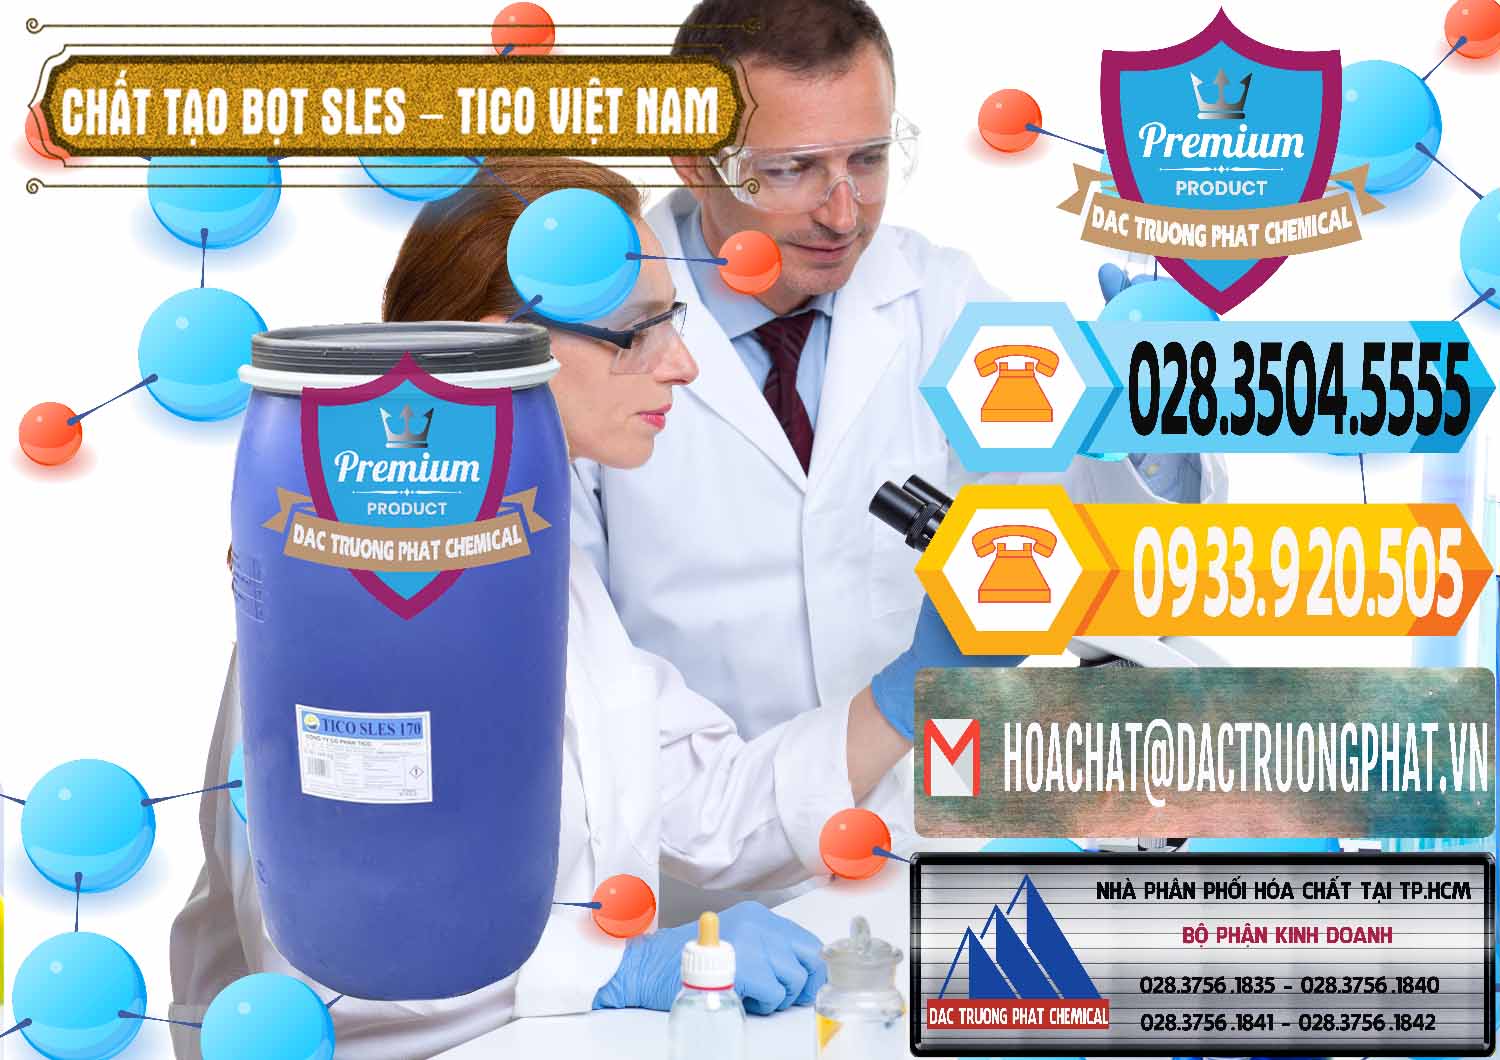 Nơi chuyên bán & cung cấp Chất Tạo Bọt Sles - Sodium Lauryl Ether Sulphate Tico Việt Nam - 0304 - Đơn vị kinh doanh & phân phối hóa chất tại TP.HCM - hoachattayrua.net